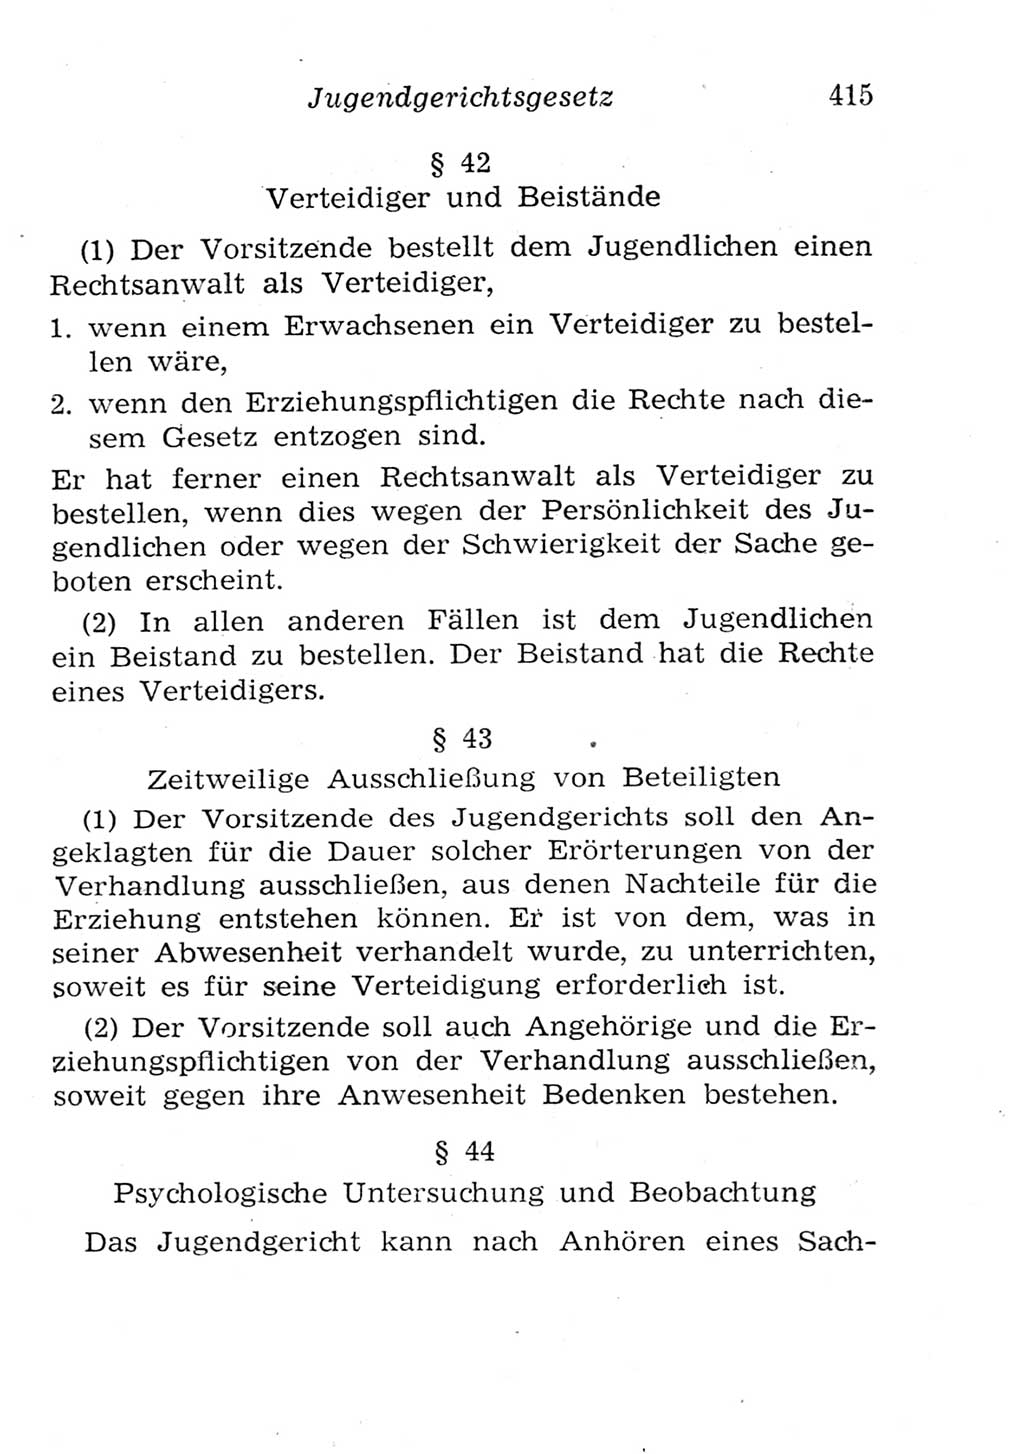 Strafgesetzbuch (StGB) und andere Strafgesetze [Deutsche Demokratische Republik (DDR)] 1957, Seite 415 (StGB Strafges. DDR 1957, S. 415)